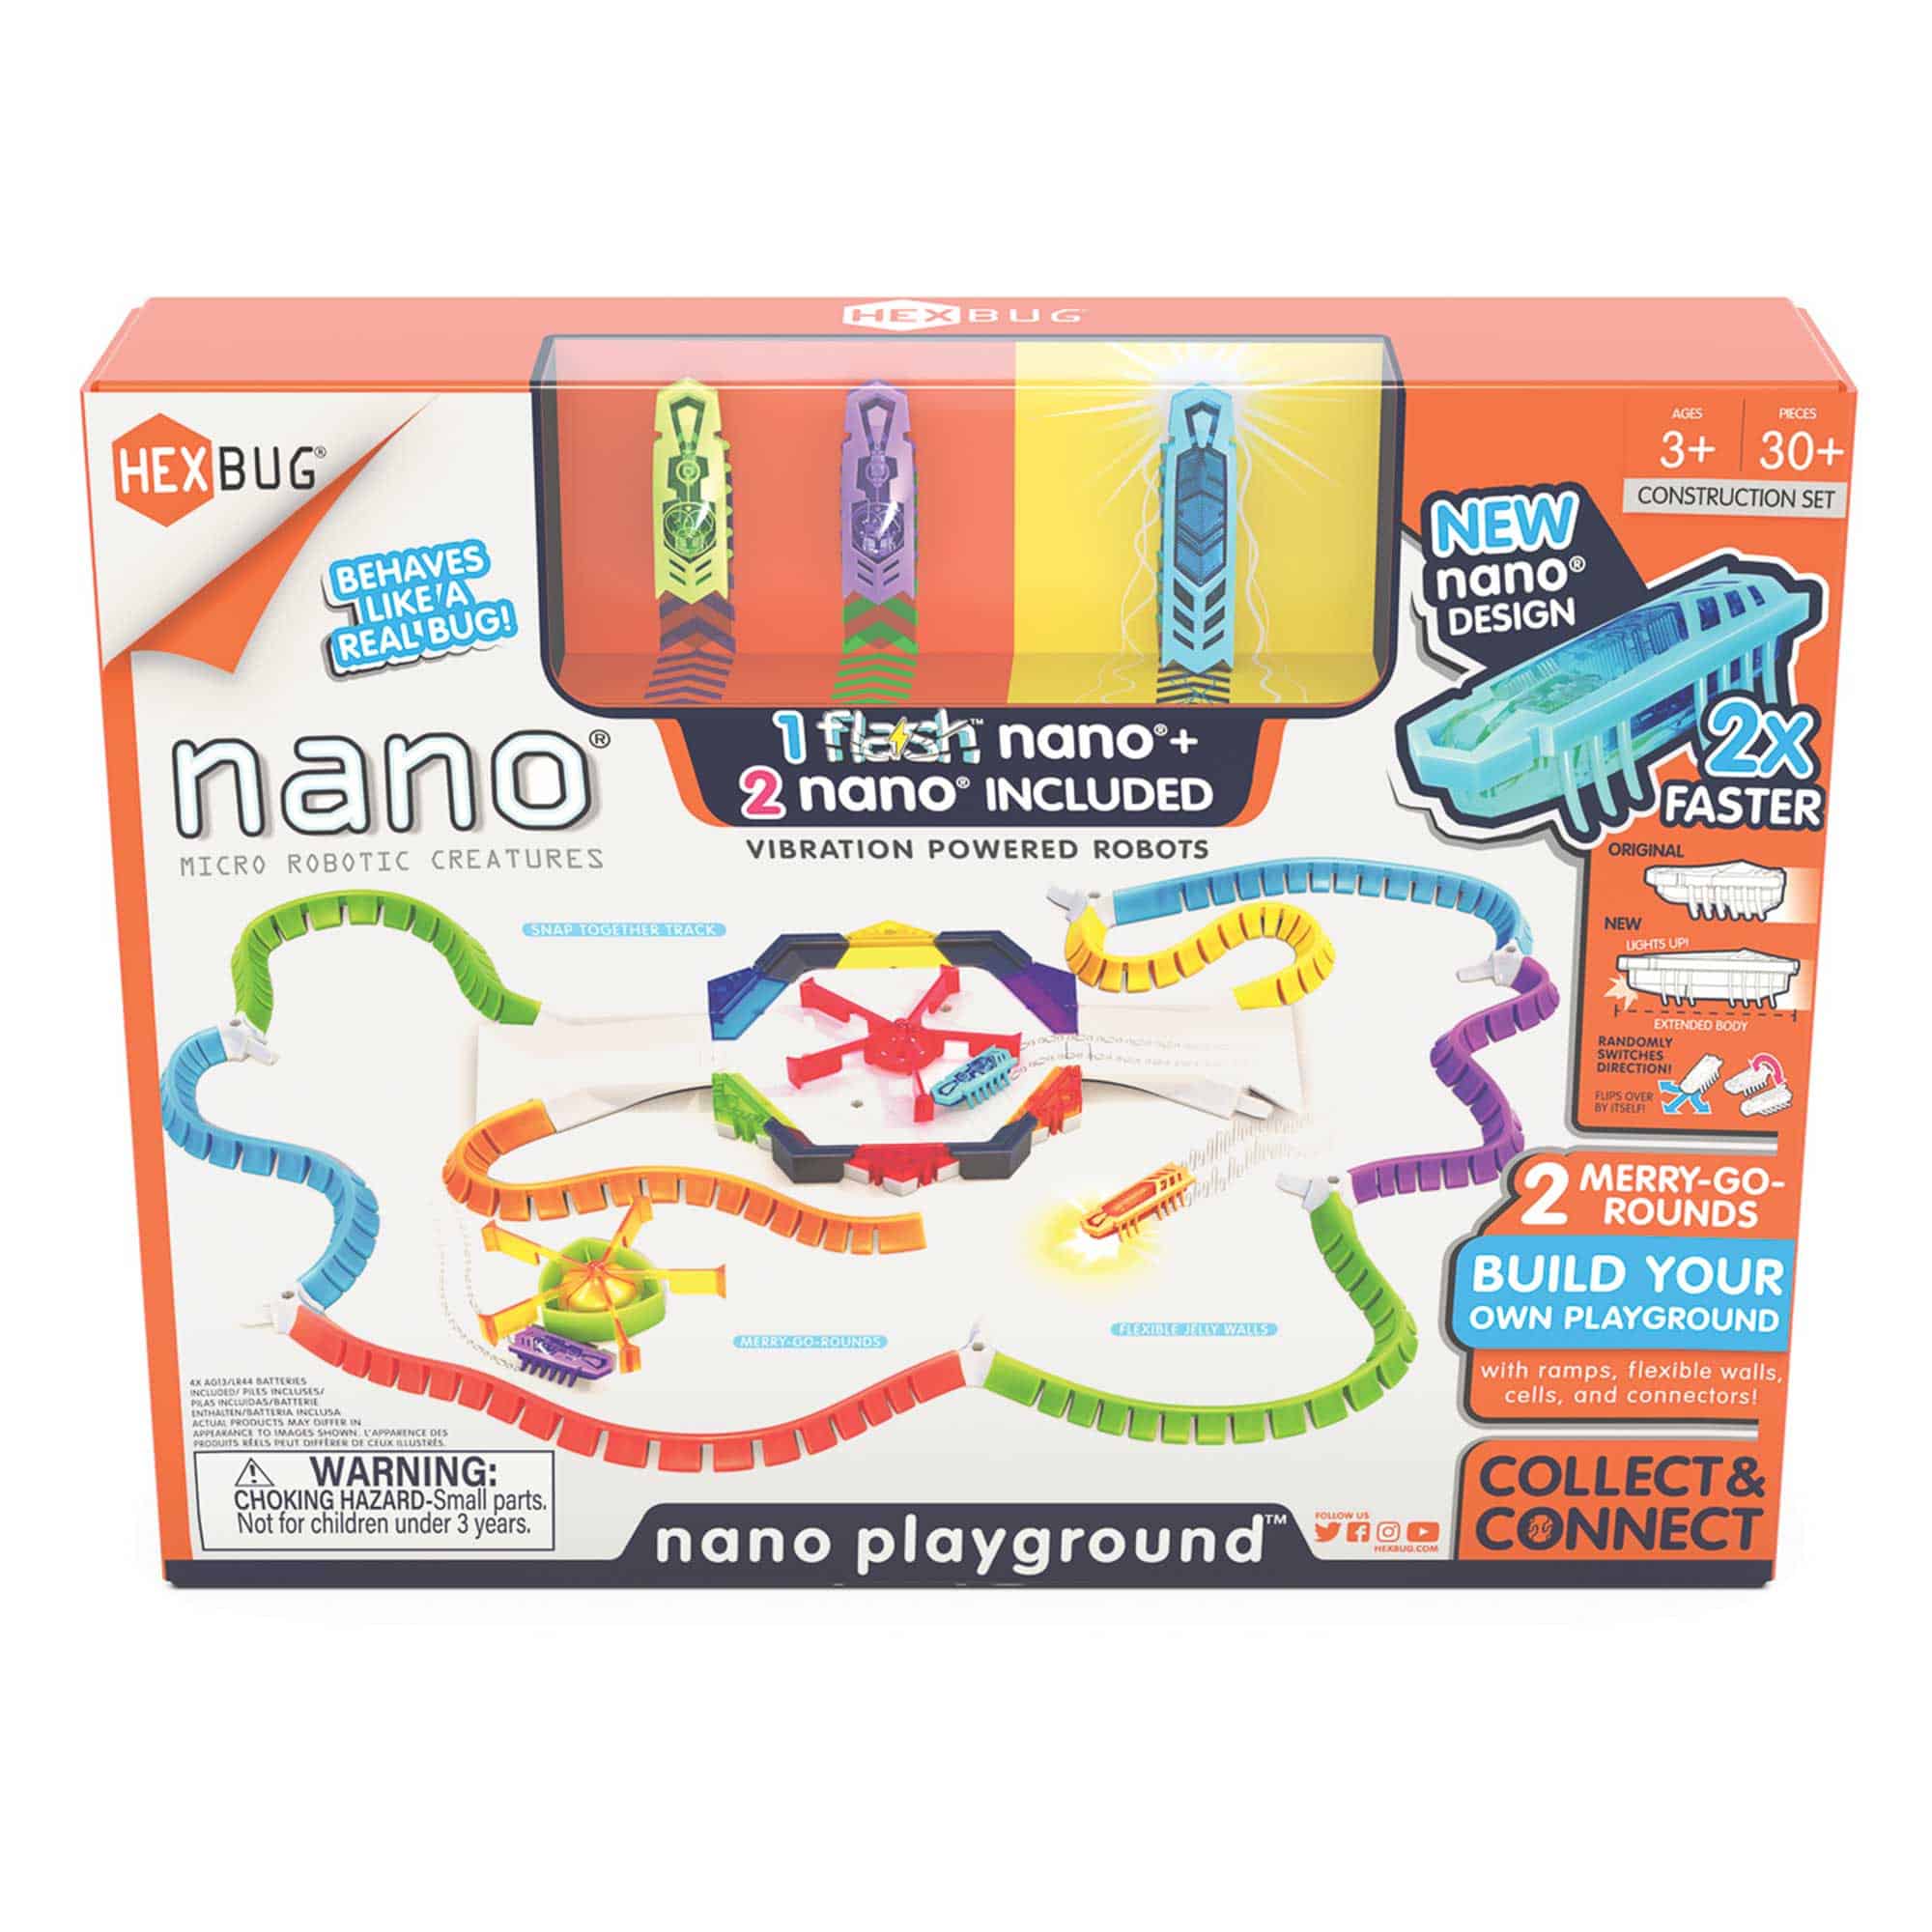 HEXBUG - Nano Flash Playground Set